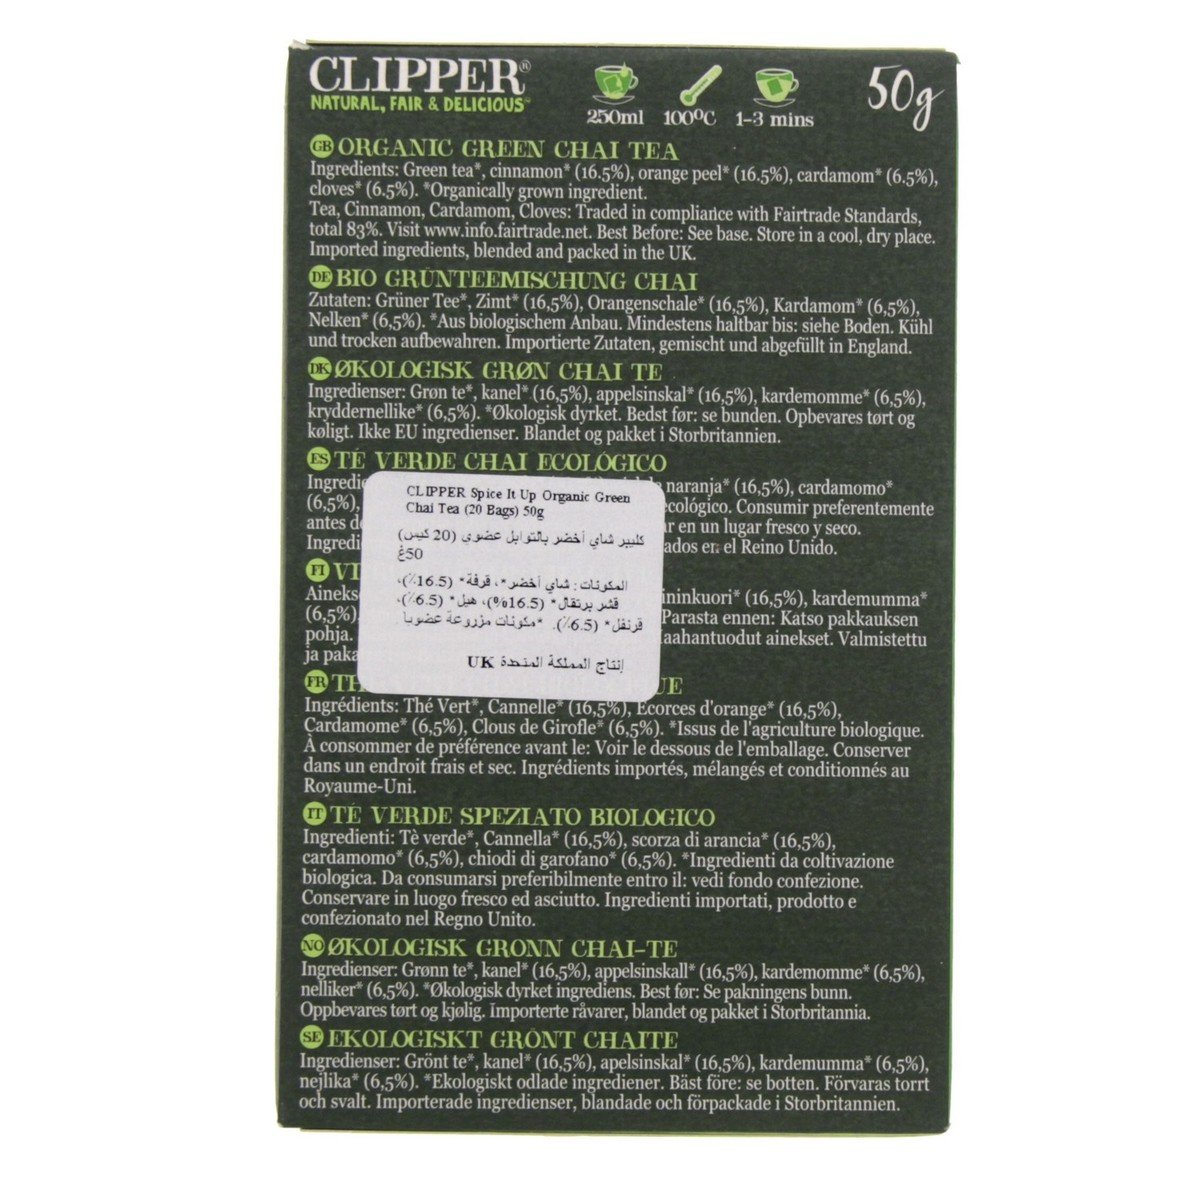 Clipper Spice It Up Organic Green Chai Tea 20 Teabags